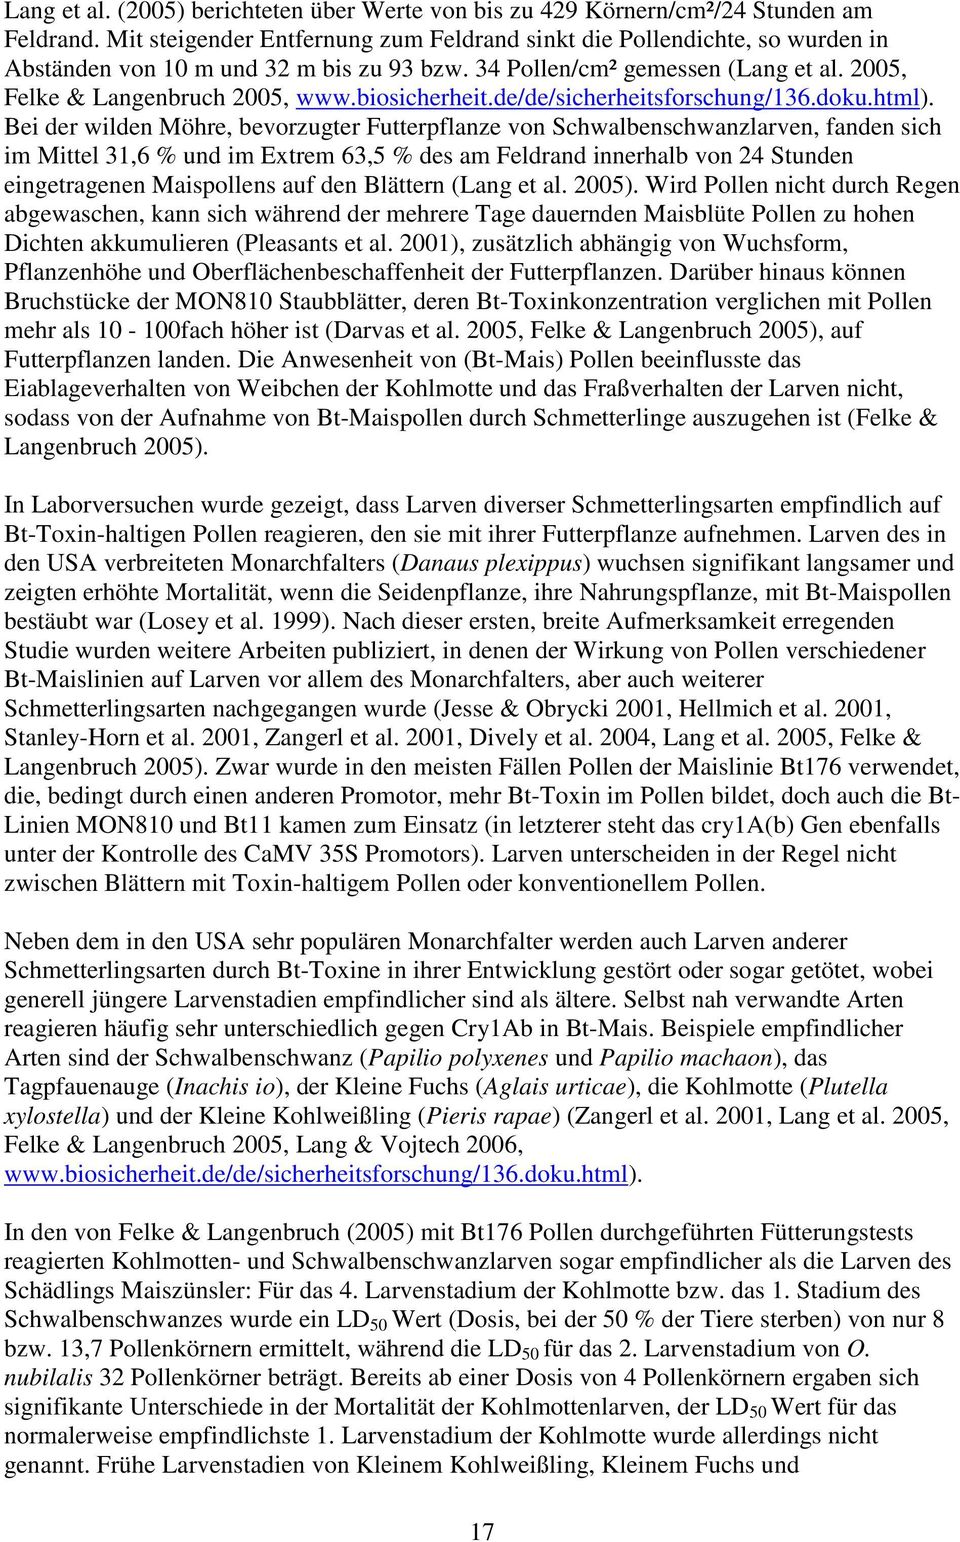 biosicherheit.de/de/sicherheitsforschung/136.doku.html).